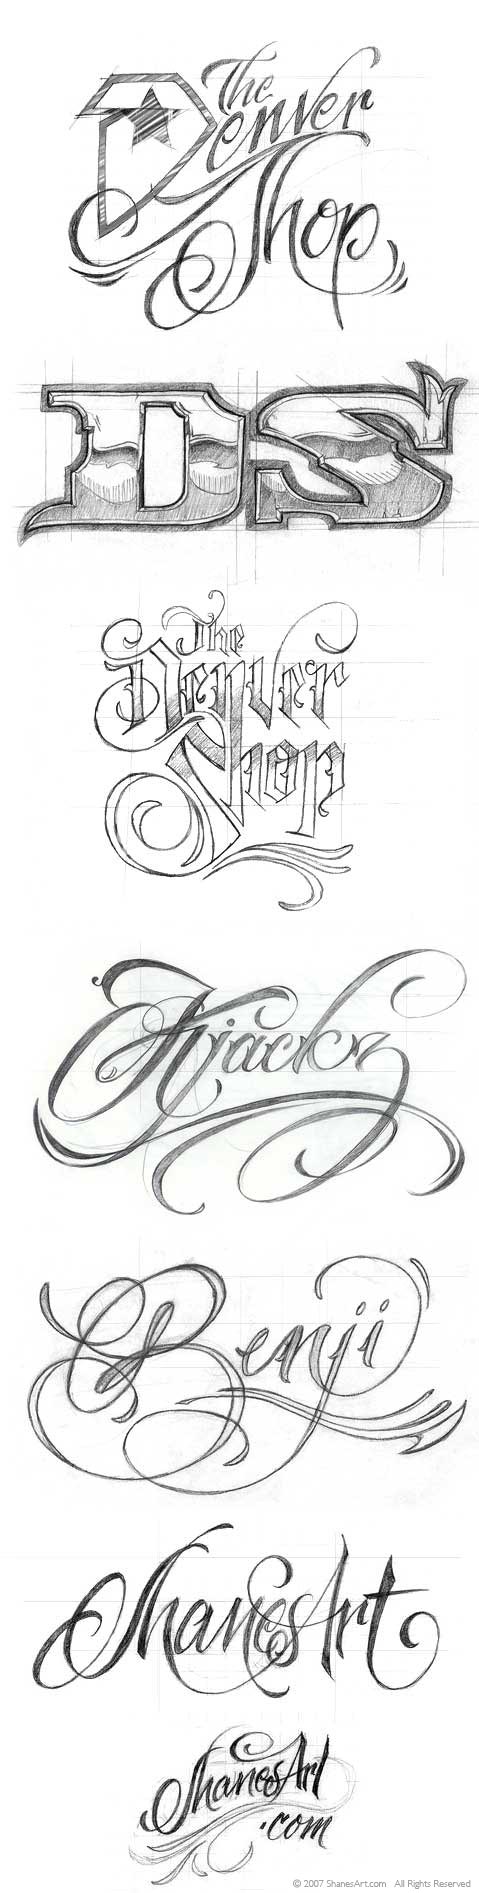 of biker/tattoo lettering.